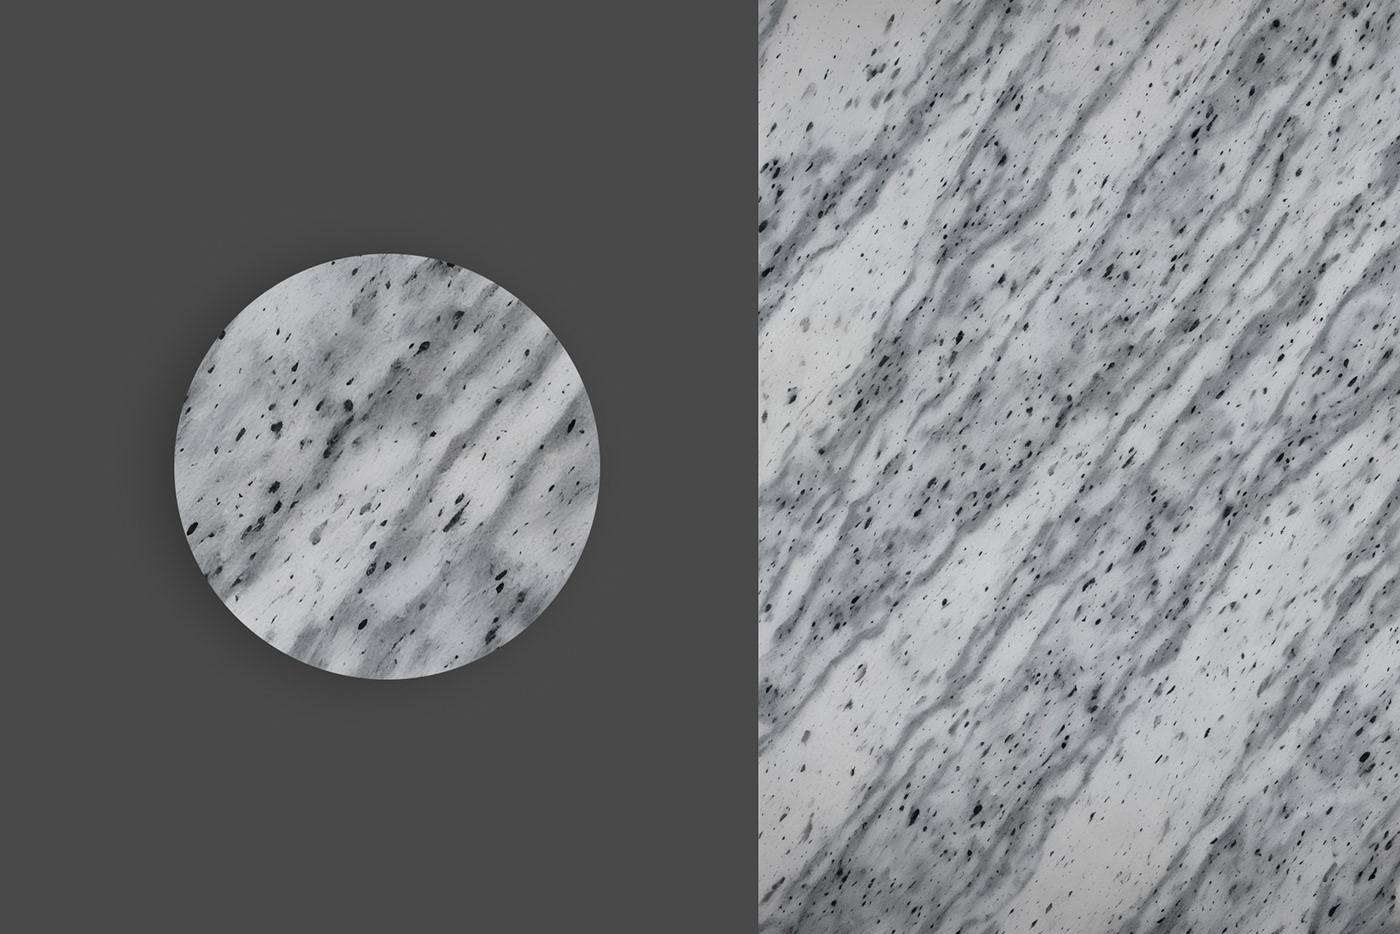 designer graphic design  interior design  Marble Nature texture Texture Design textures